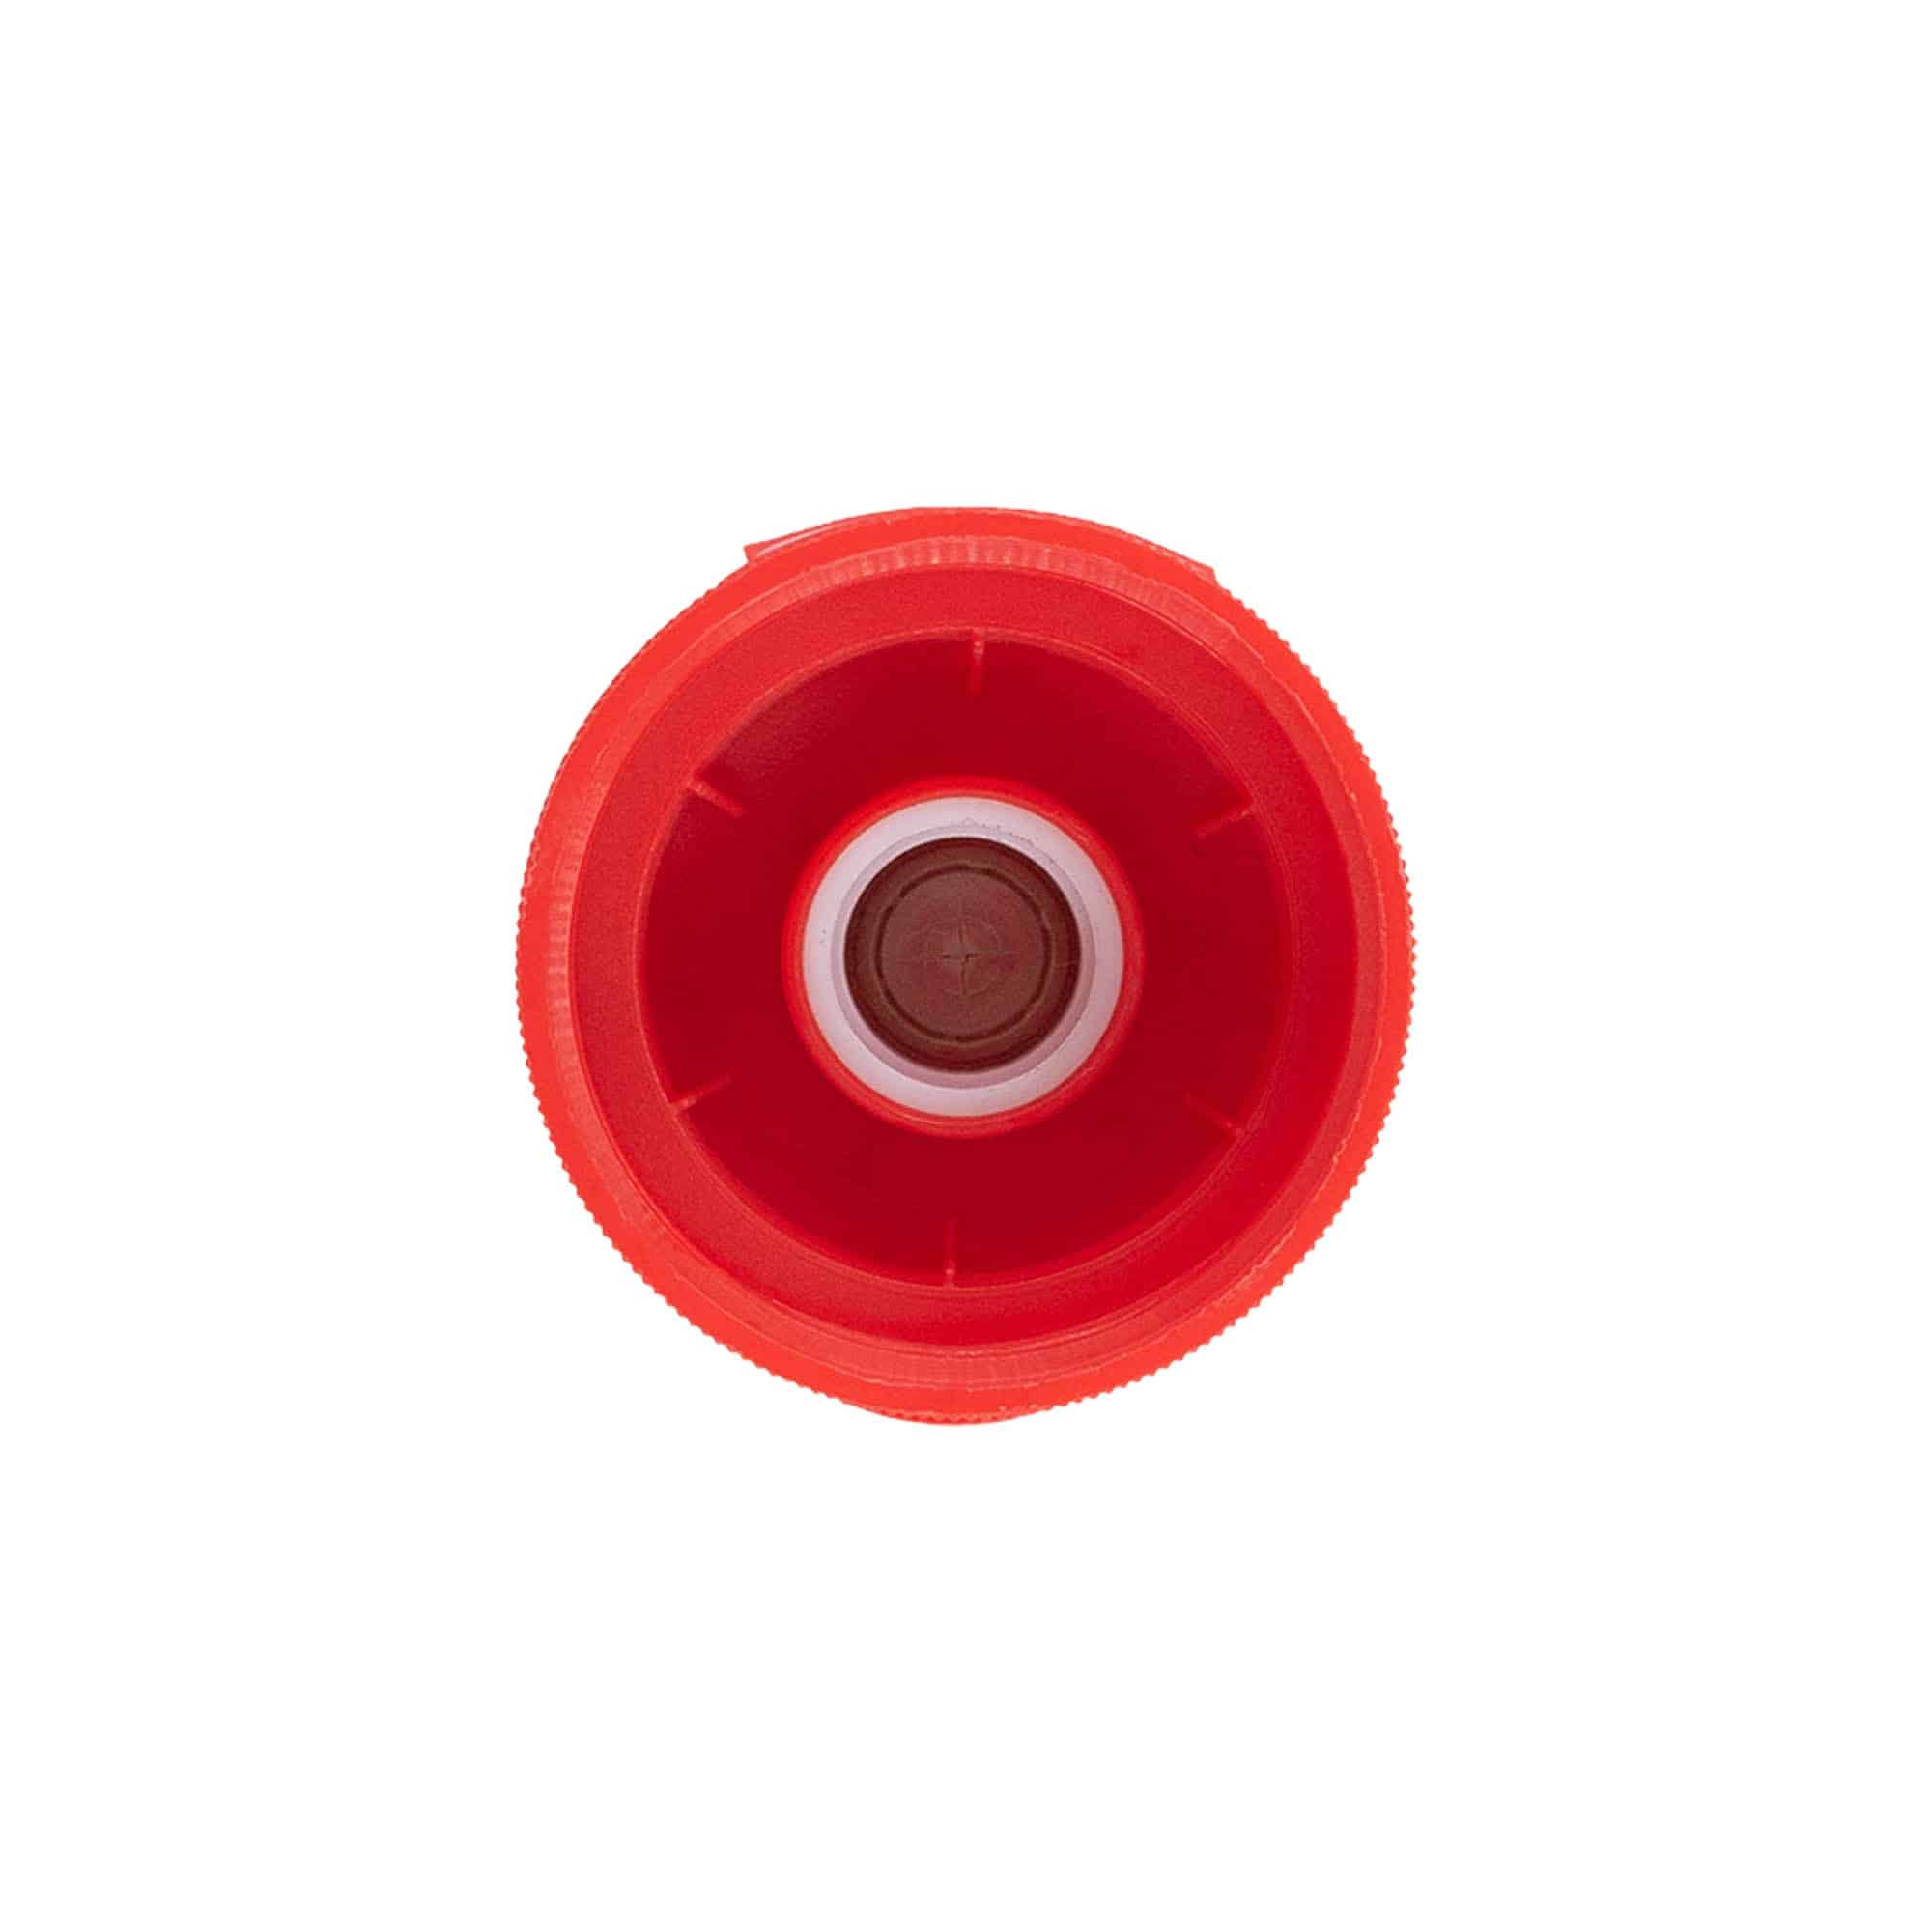 Zakrętka uchylna, tworzywo sztuczne PP, kolor czerwony, do zamknięcia: GPI 38/400